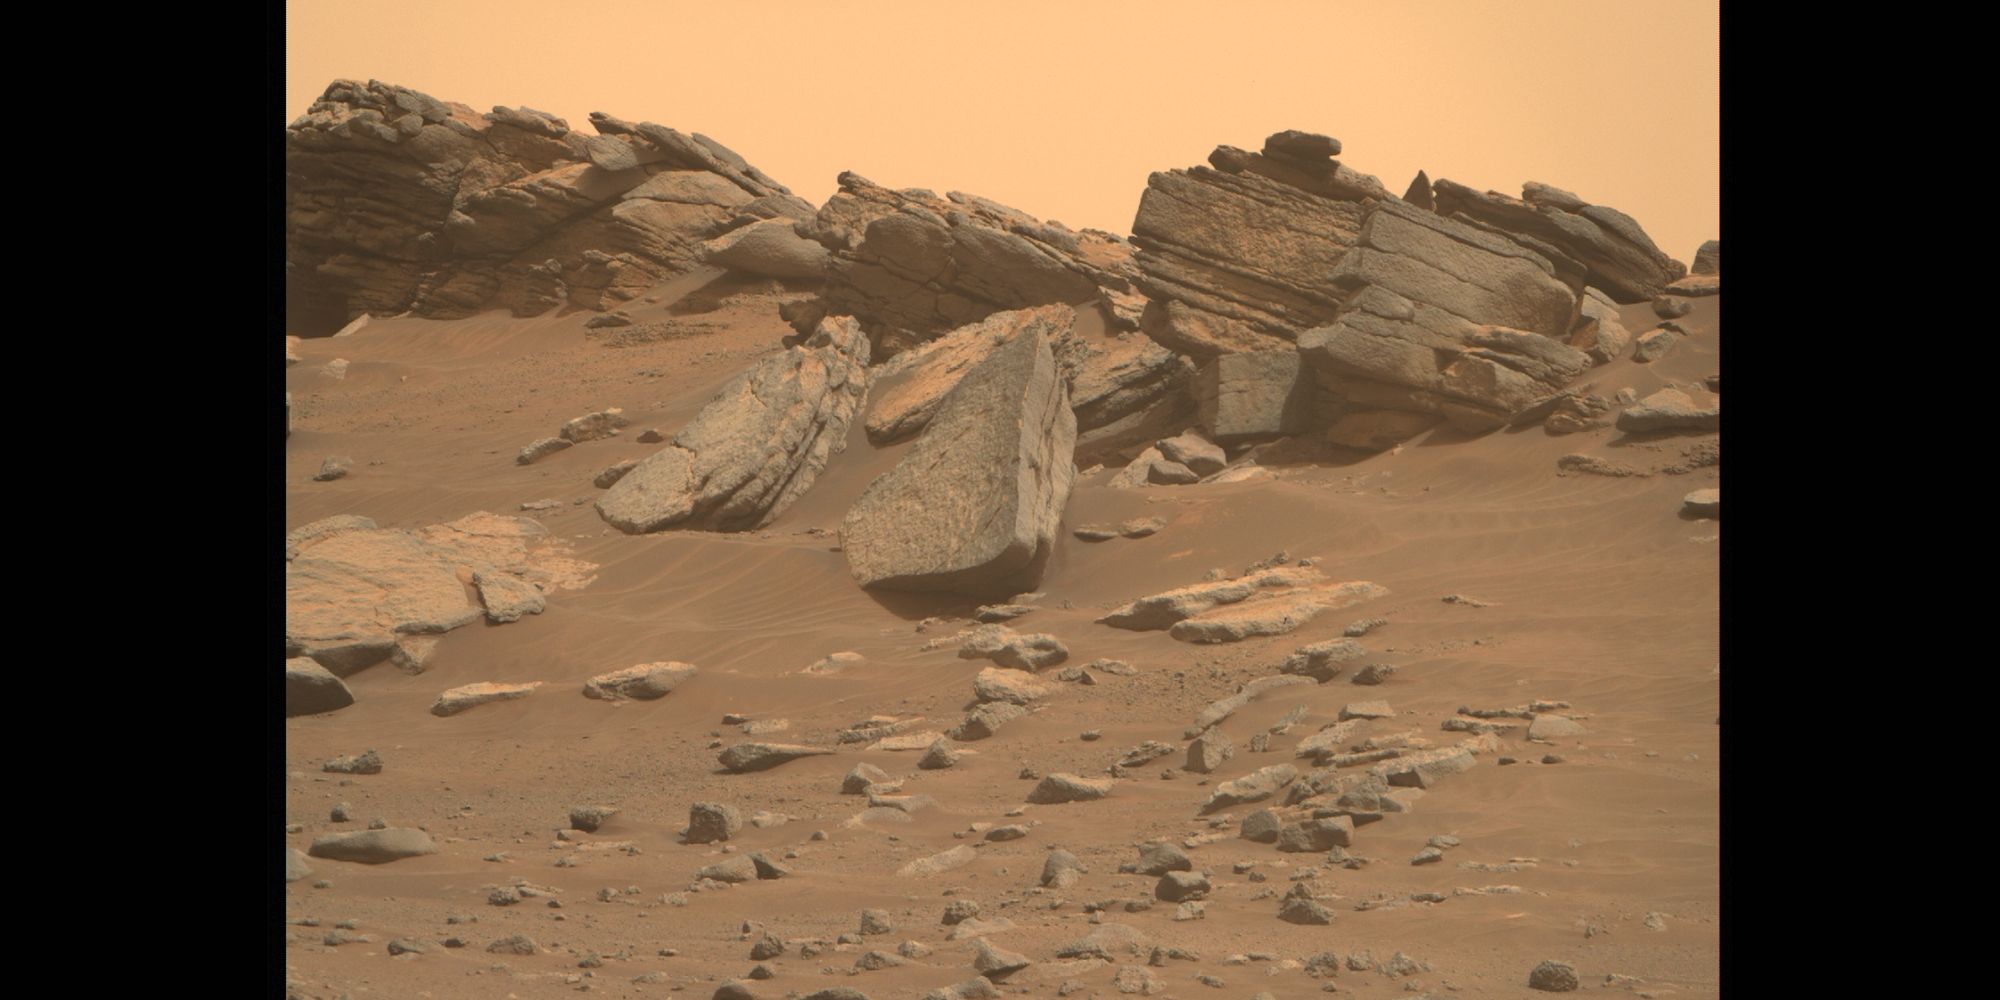 ¿Una nave espacial estrellada en Marte?  Foto de rover de la NASA revela rocas fascinantes